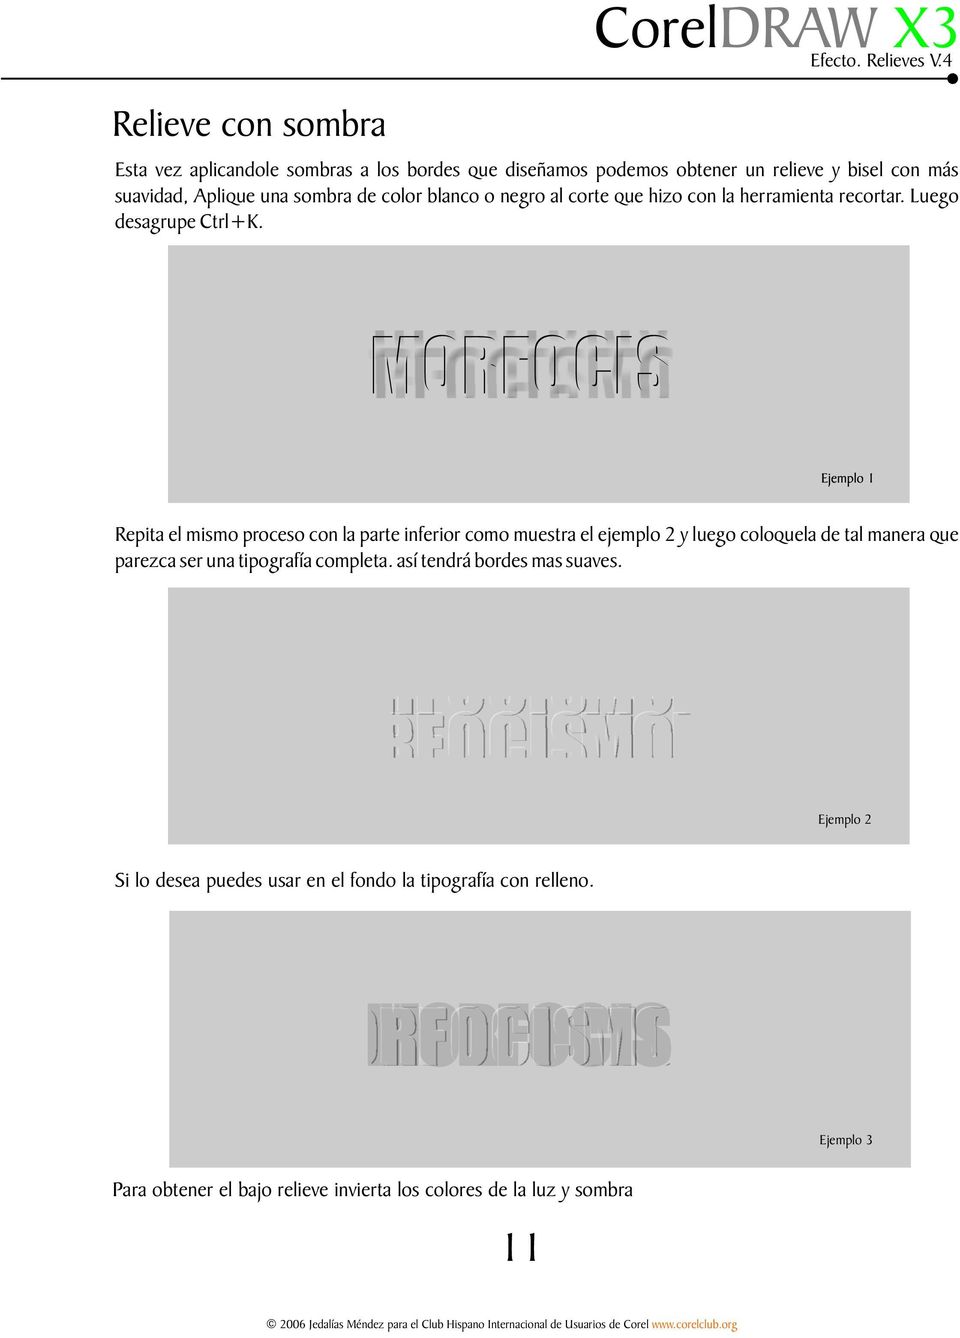 Repita el mismo proceso con la parte inferior como muestra el ejemplo 2 y luego coloquela de tal manera que parezca ser una tipografía